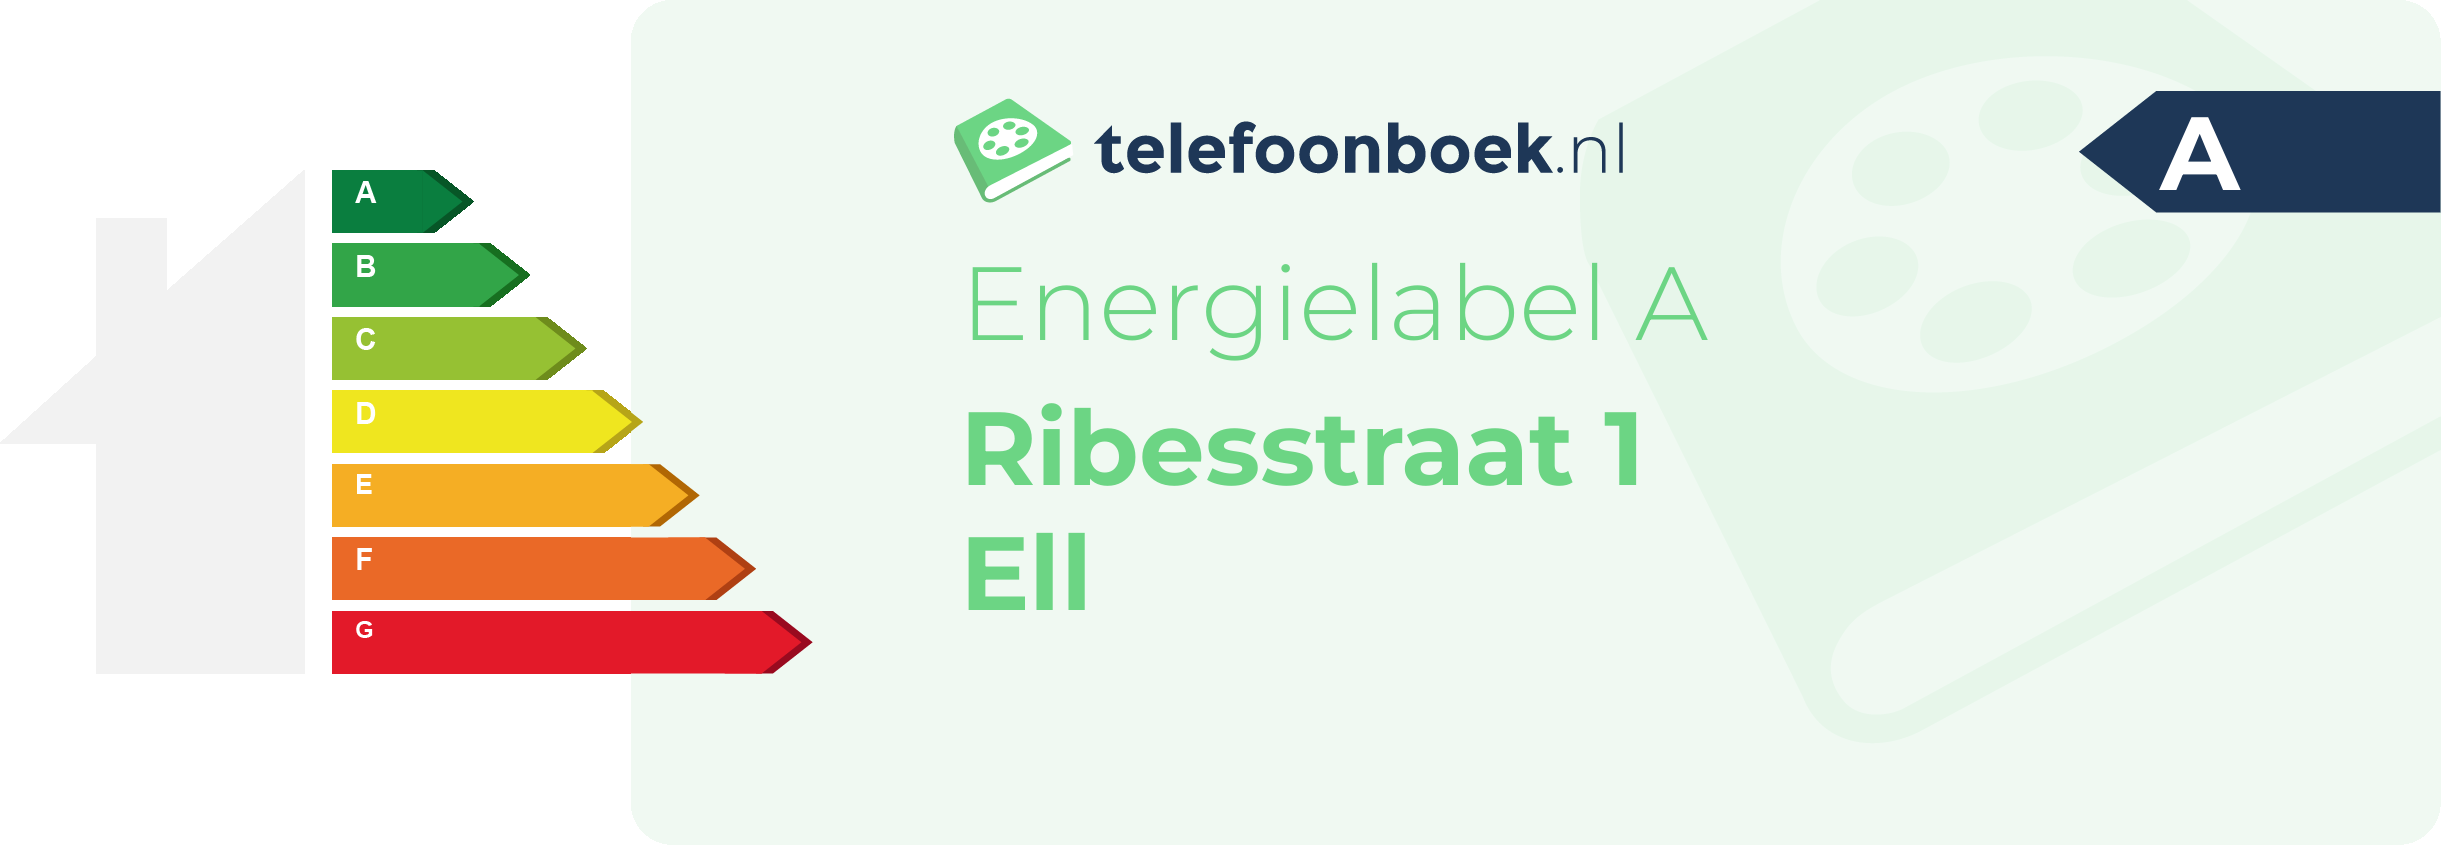 Energielabel Ribesstraat 1 Ell